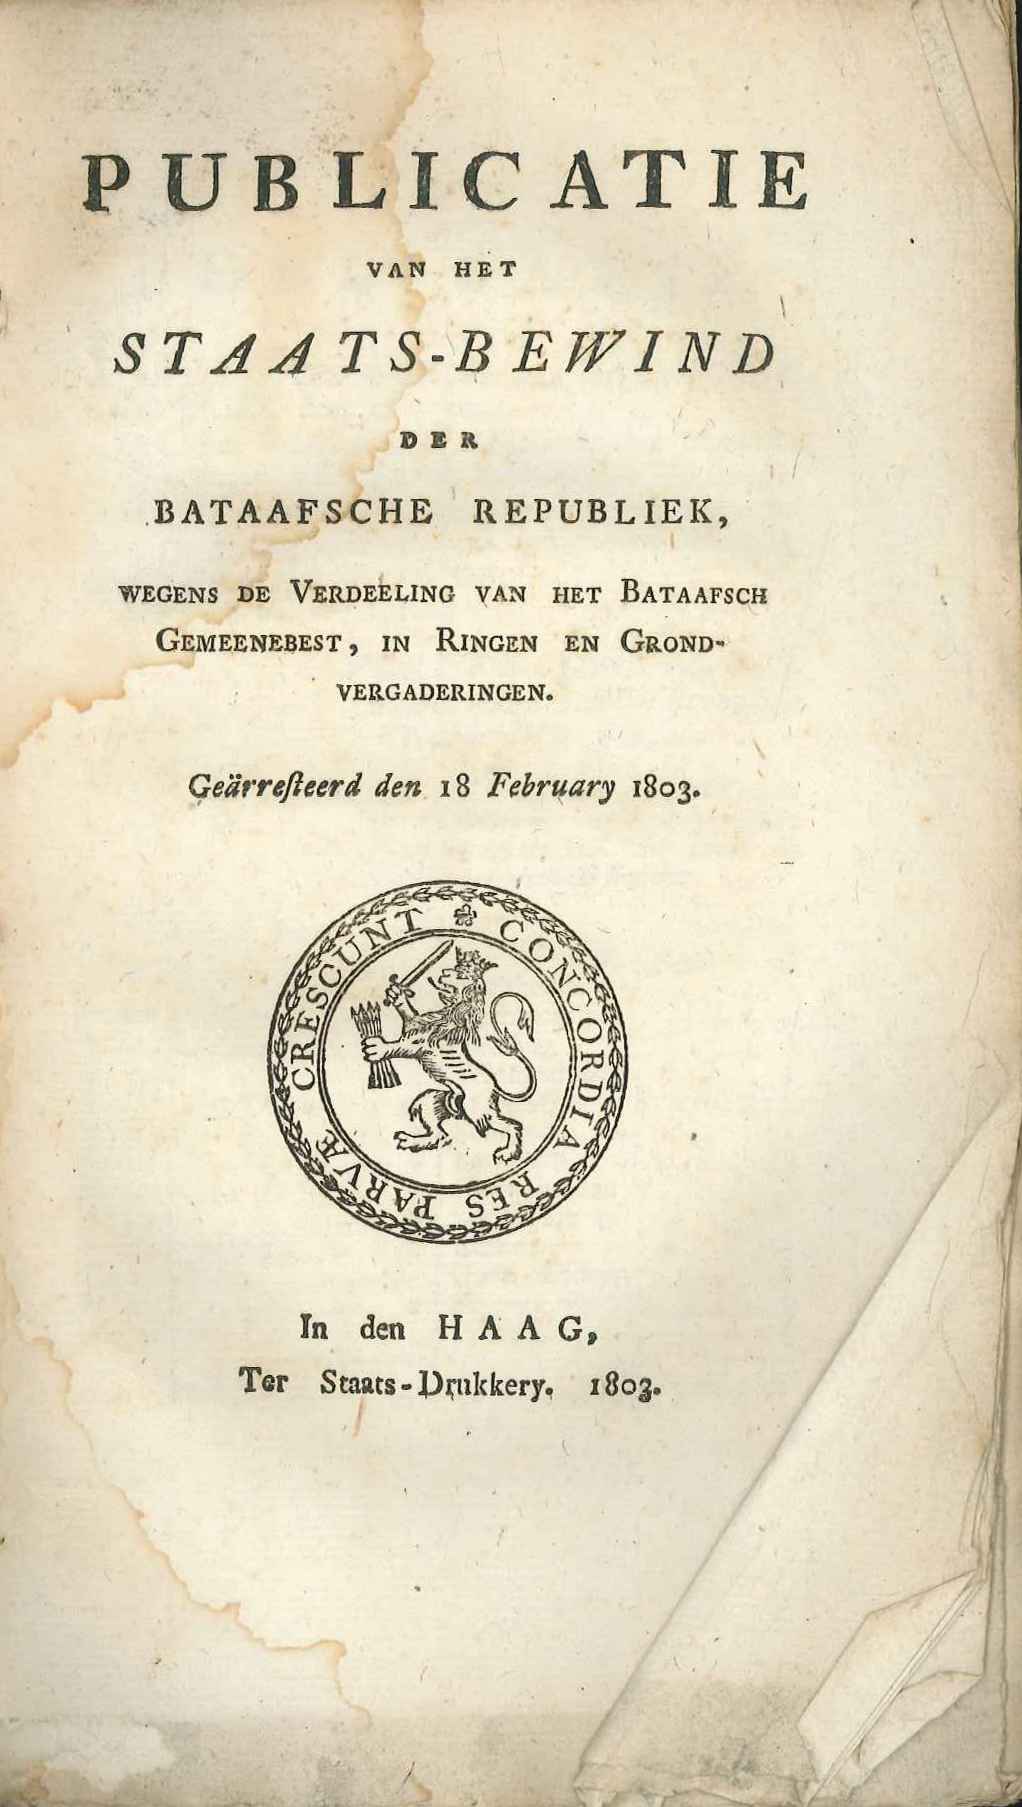 Bekendmaking over de indeling van de Bataafse Republiek, 1803.